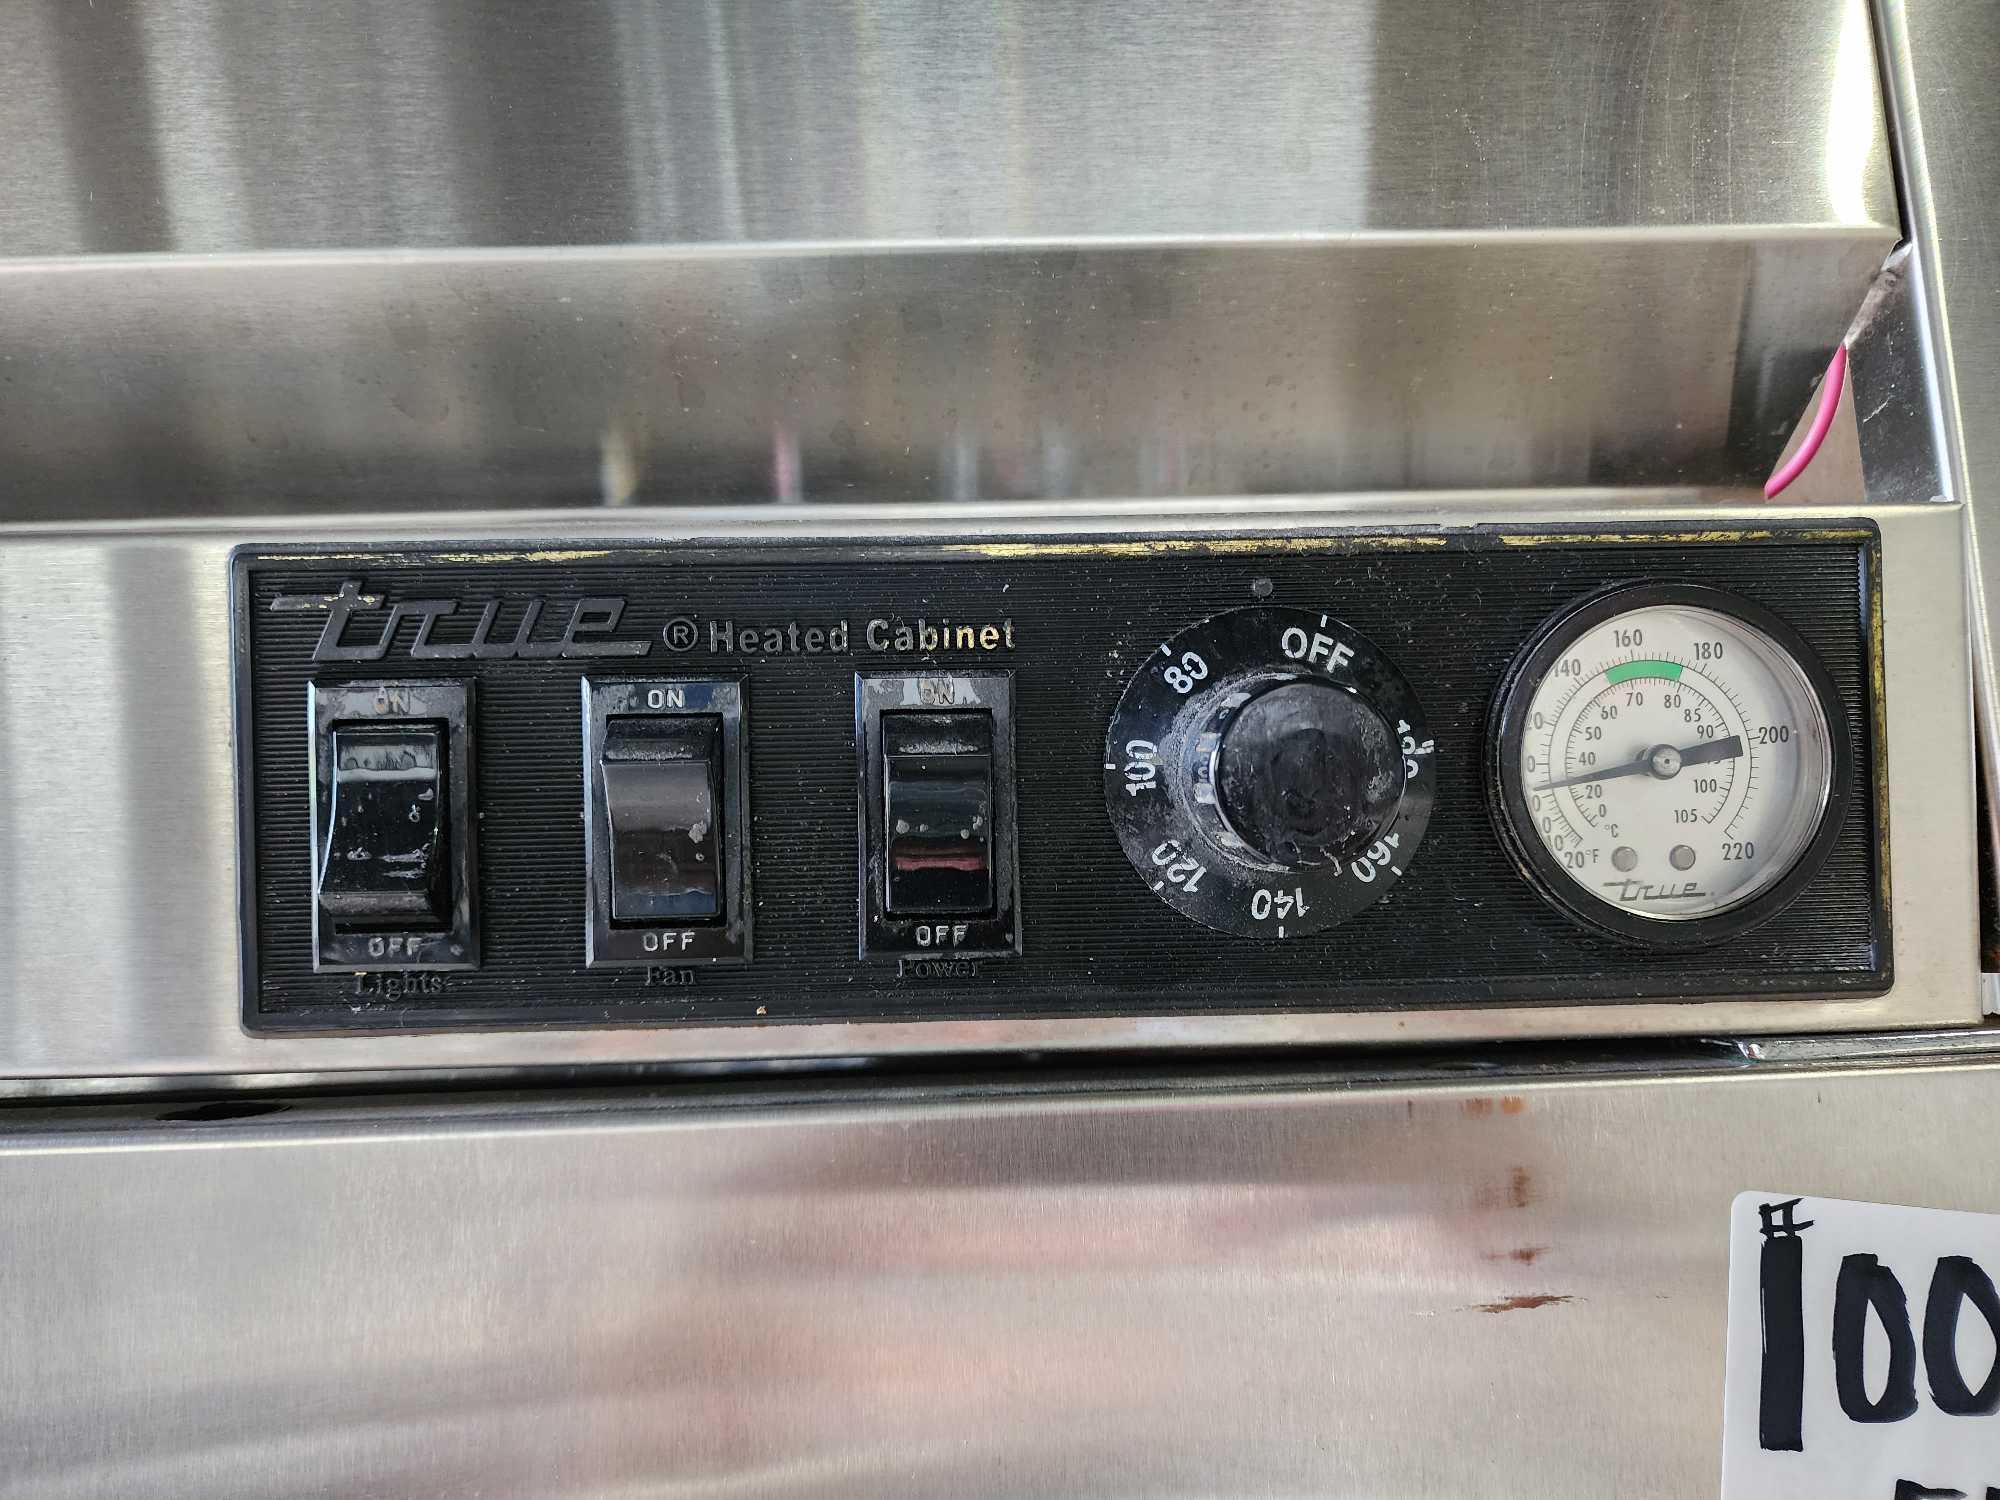 True TR2HPT-4HS-2S 4-Door Heated Commercial Food Cabinet